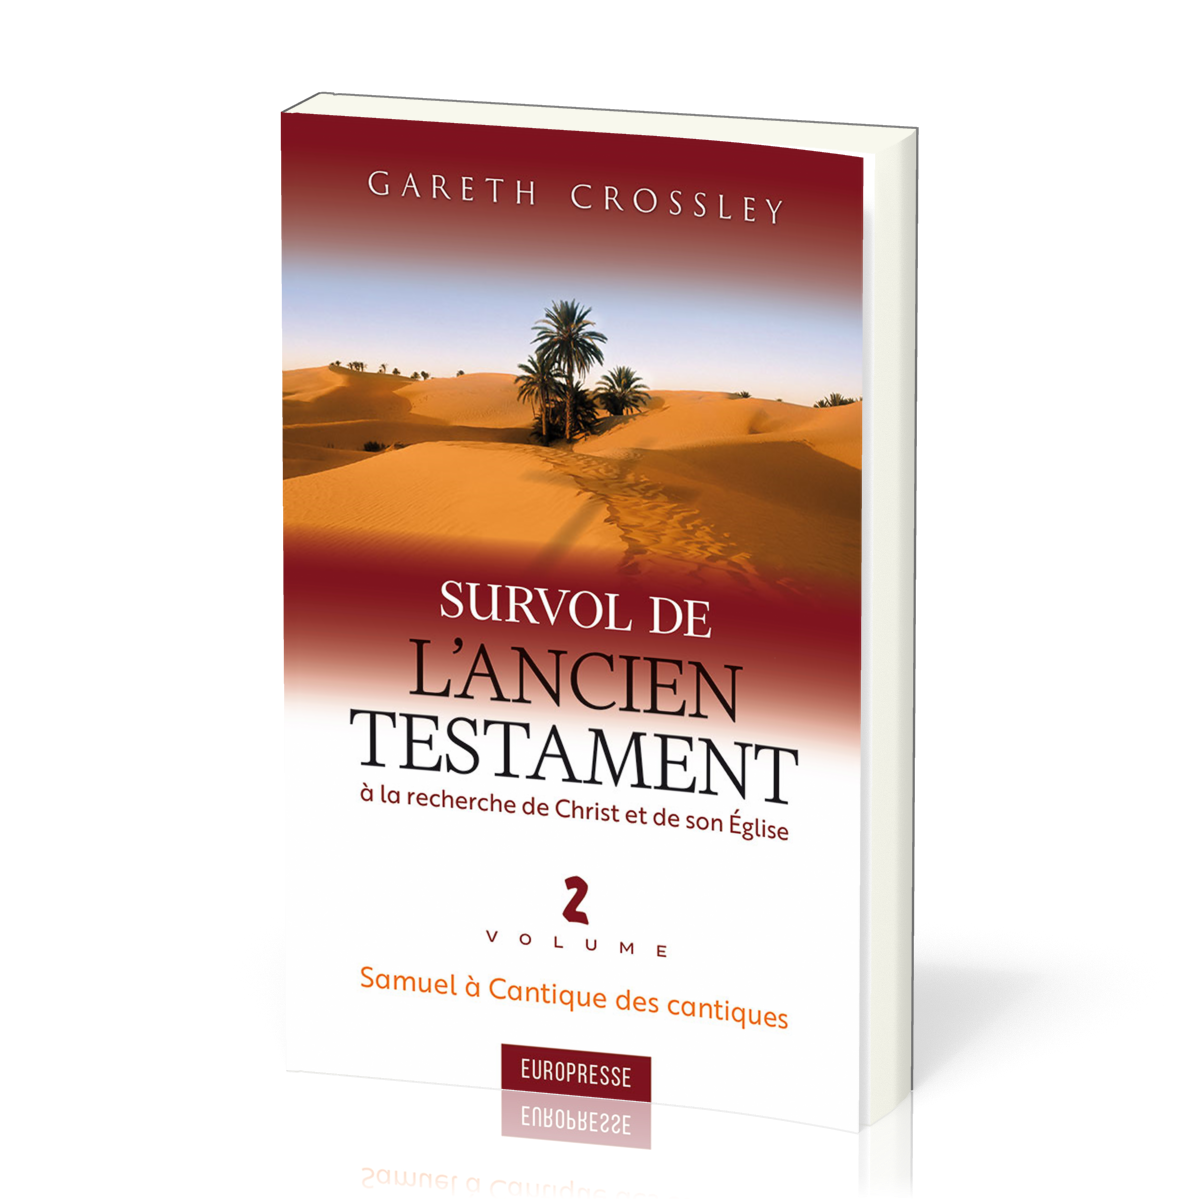 Survol de l'Ancien Testament, volume 2 - Samuel à Cantique des cantiques. À la recherche de Christ et de son Église